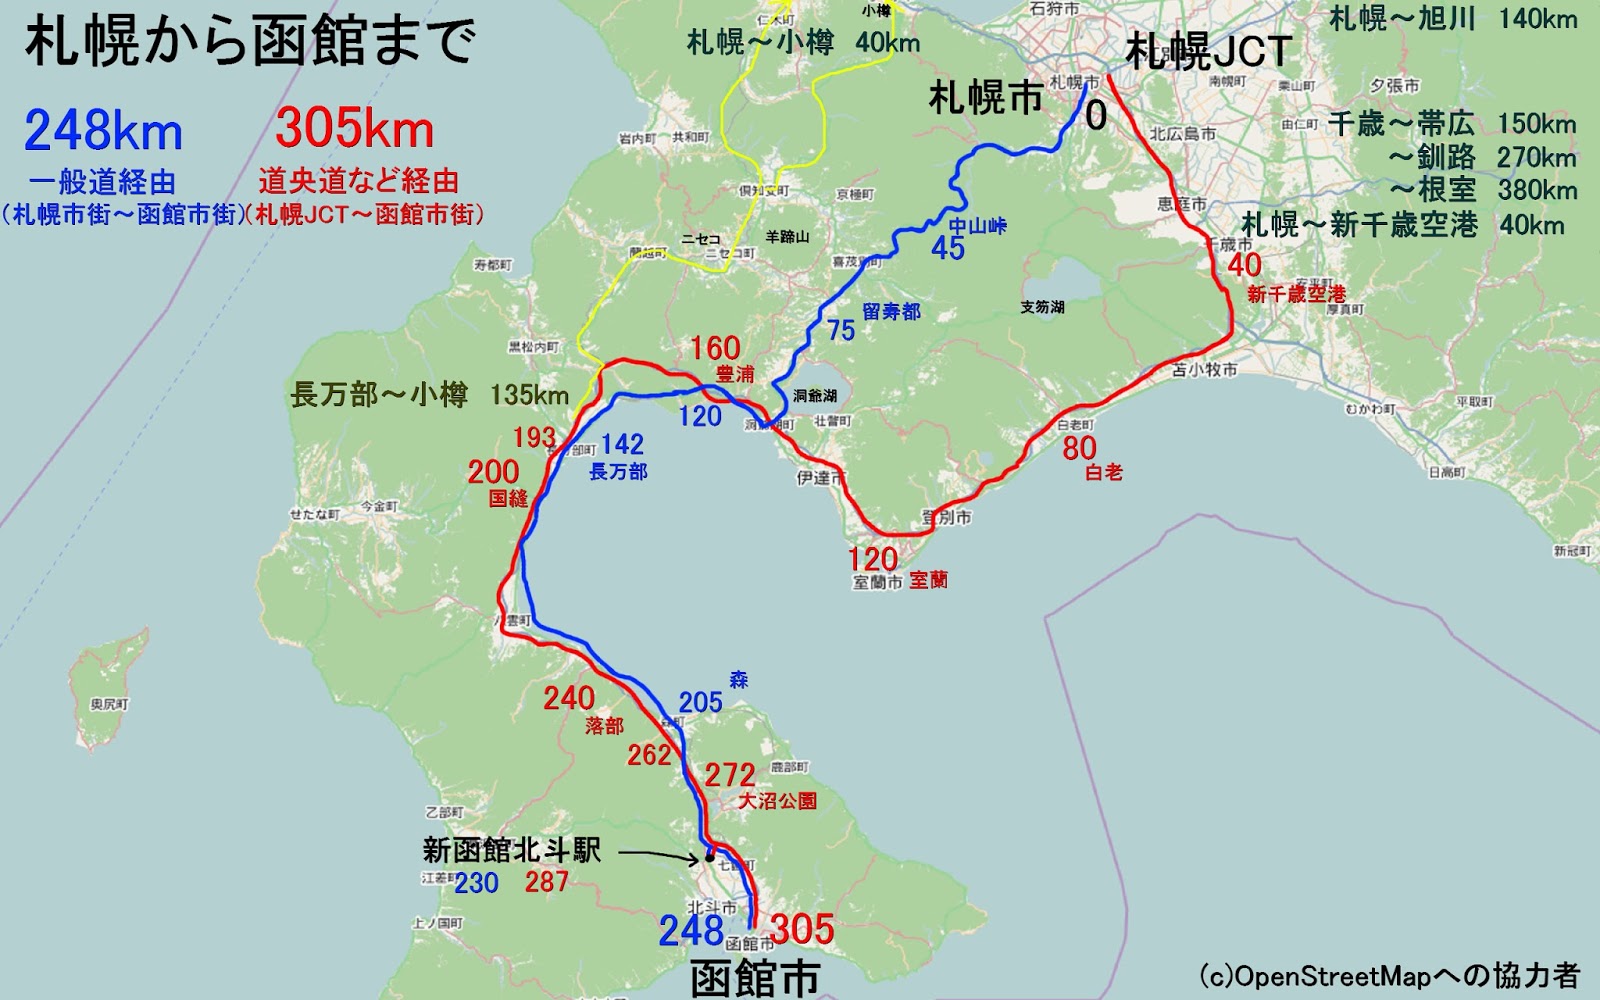 Rcp193の道路についてのブログ 道路以外もあります 新函館北斗駅から札幌市近郊 小樽 新千歳等 へ 車でどれくらい時間がかかるか